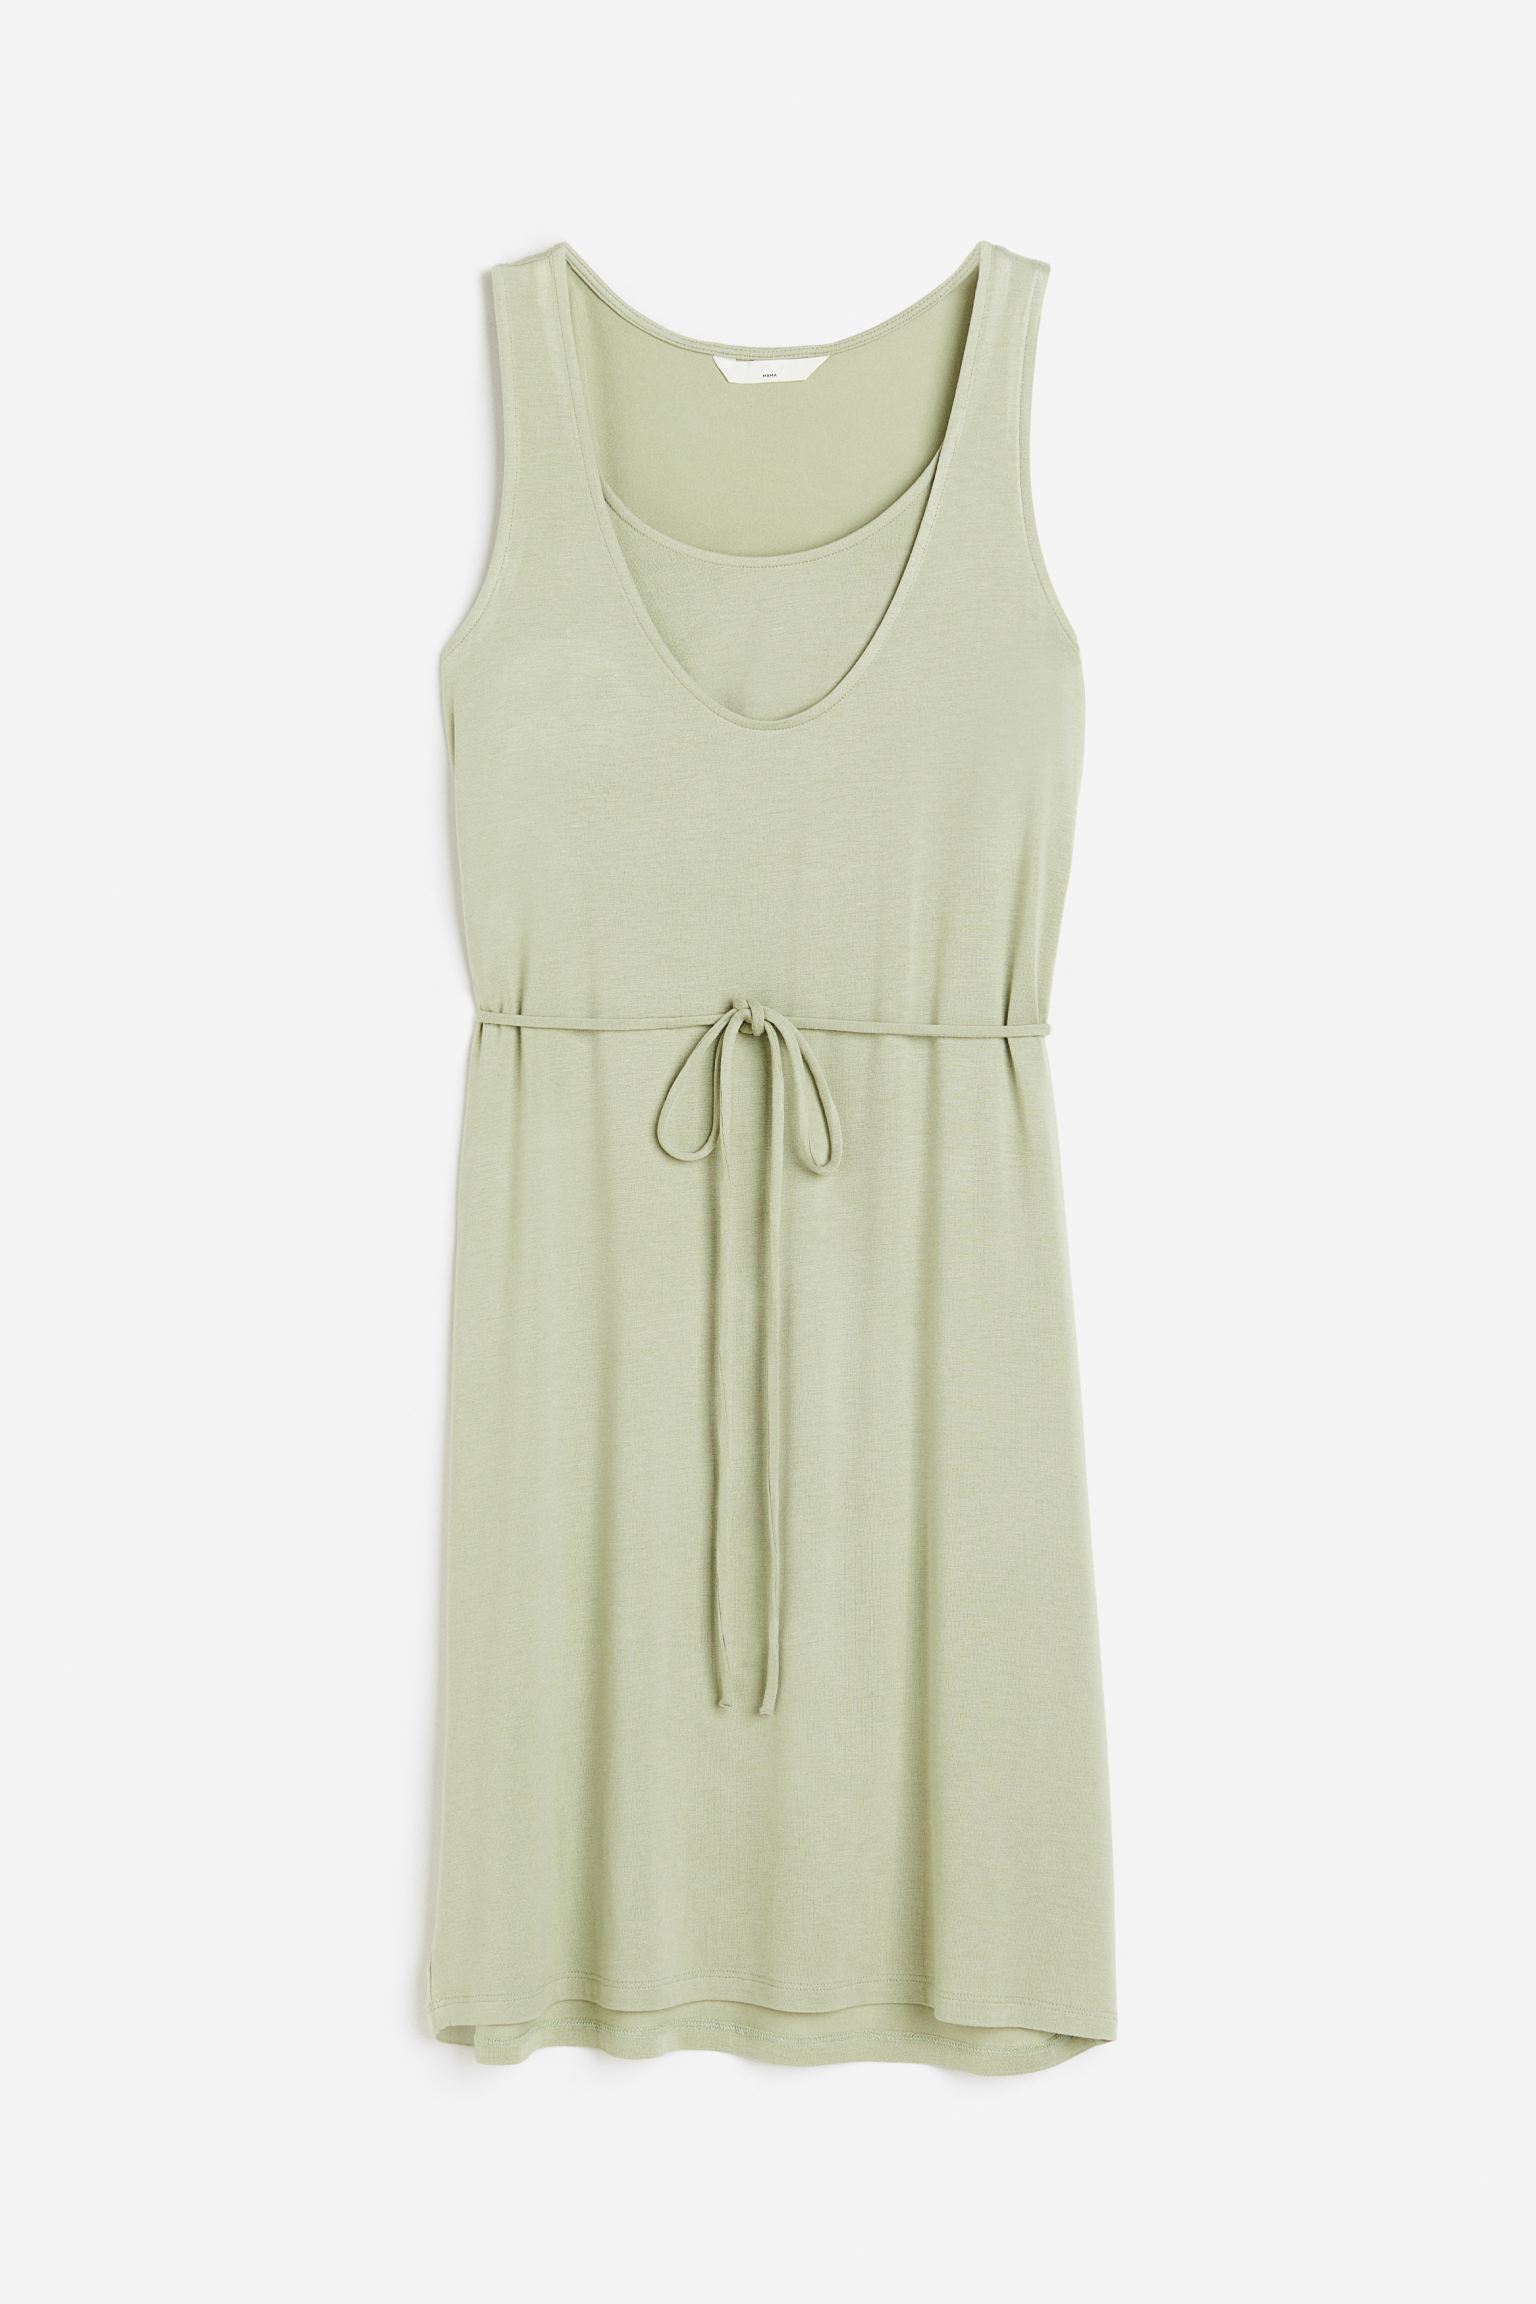 Платье женское H&M 1116459001 зеленое L (доставка из-за рубежа)